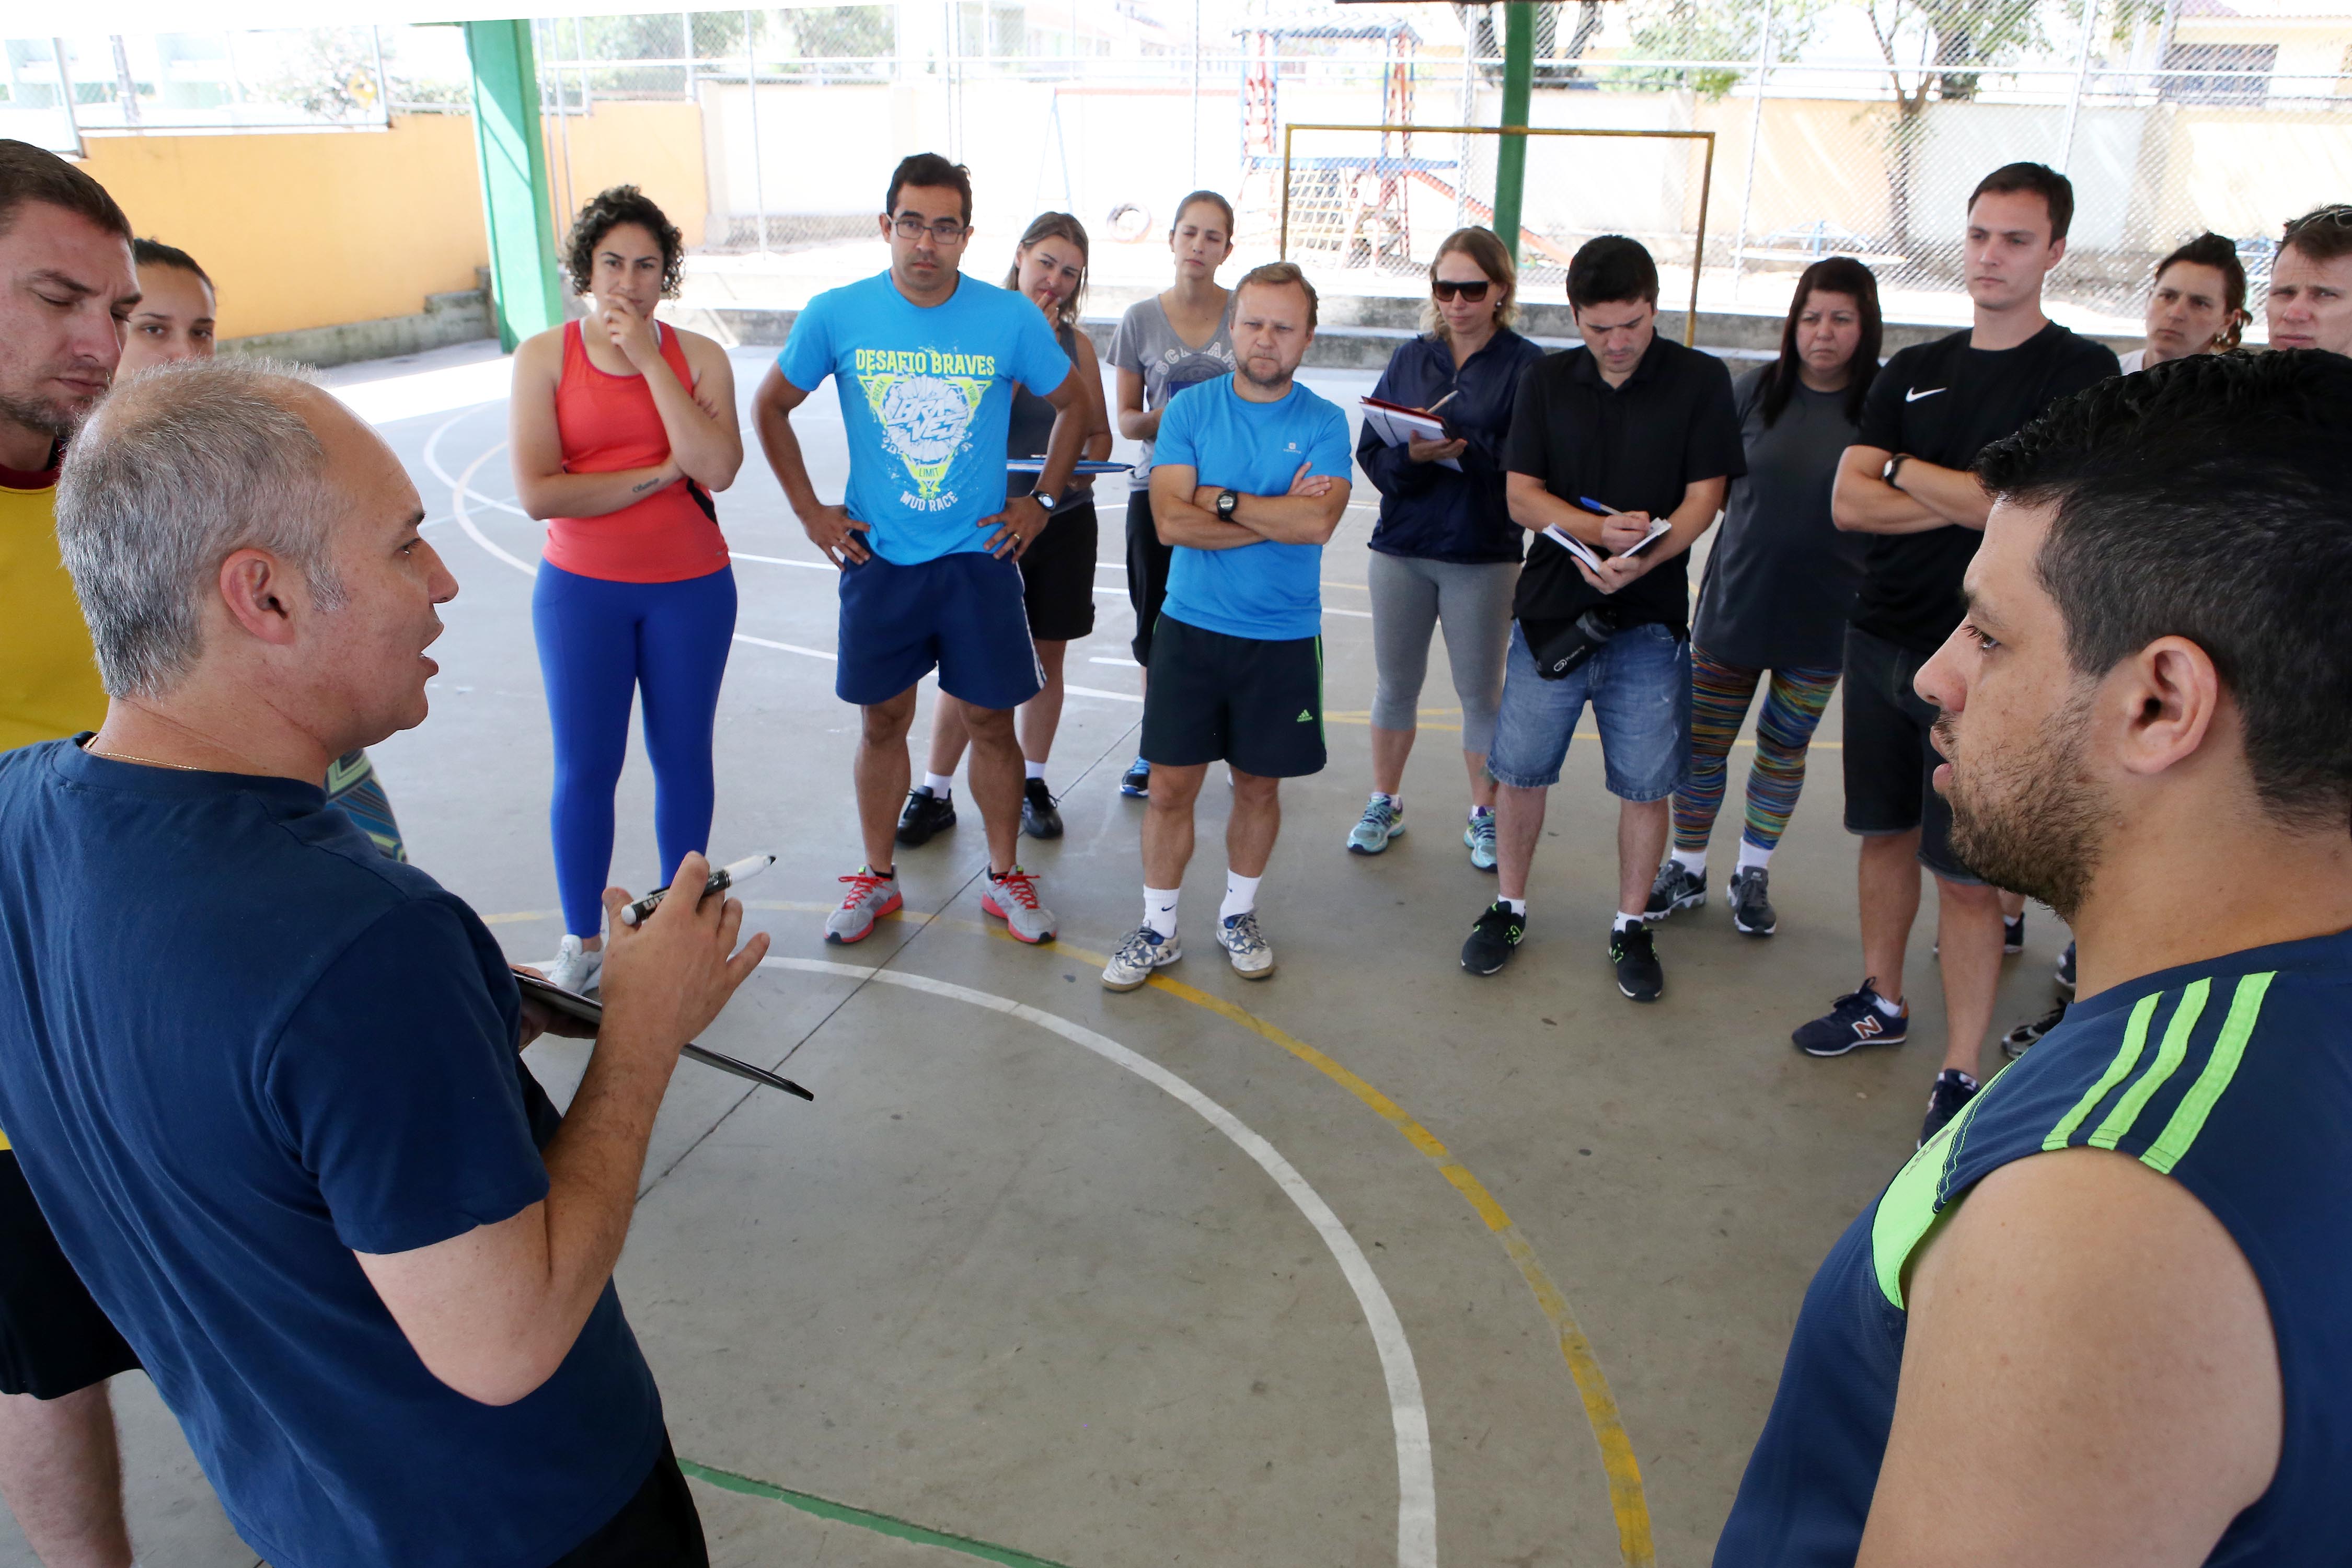 Xadrez desenvolve raciocínio de alunos de escolas municipais - Prefeitura  de Curitiba